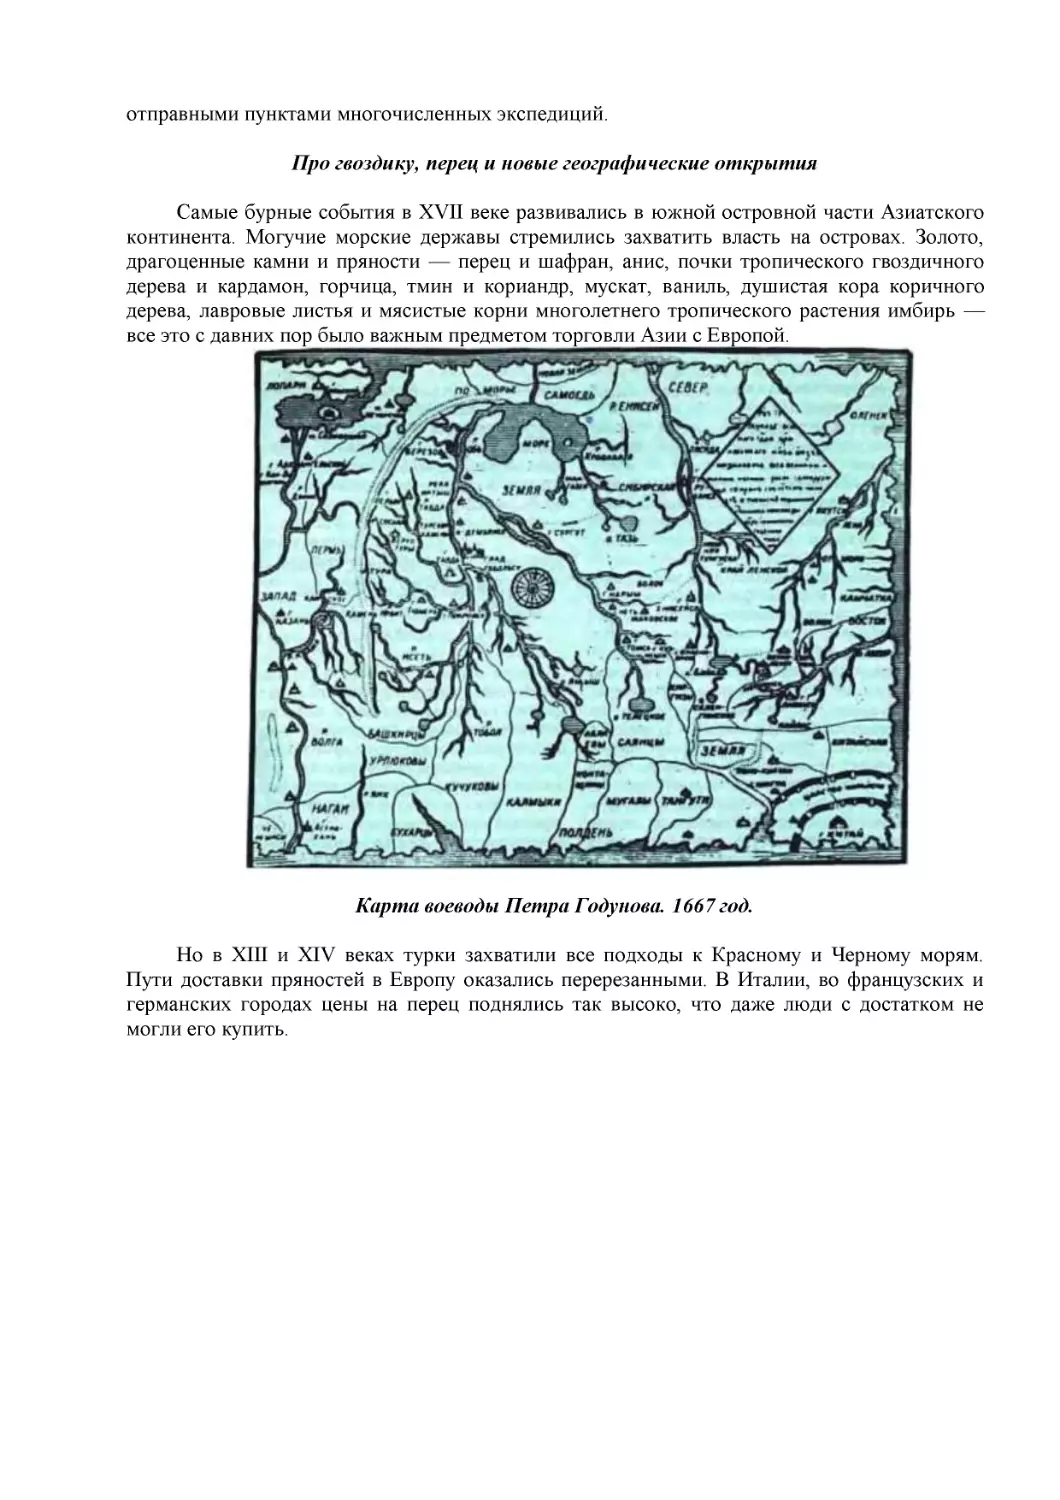 Про гвоздику, перец и новые географические открытия
Карта воеводы Петра Годунова. 1667 год.